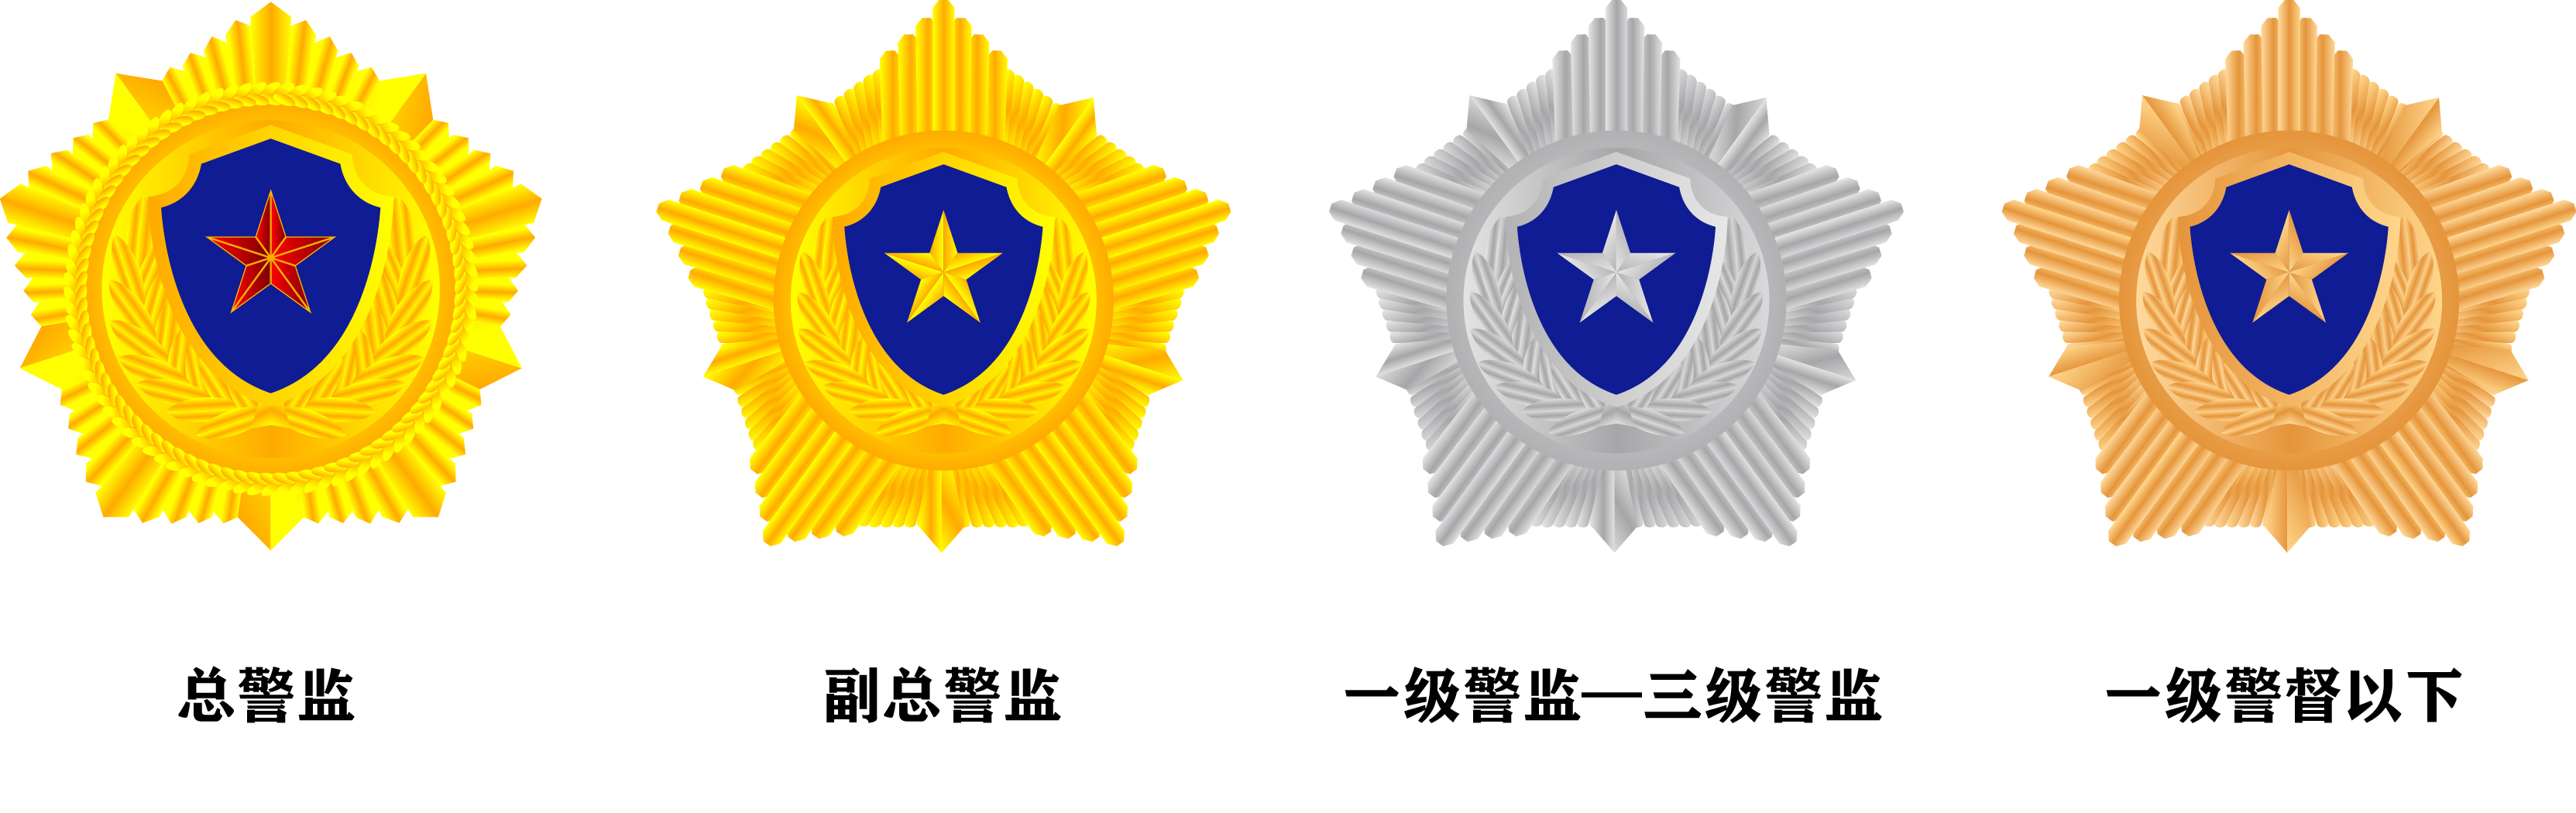 人民警察银盾章,人民警察蓝盾章三种,其中金盾章是指总警监警衔和副总